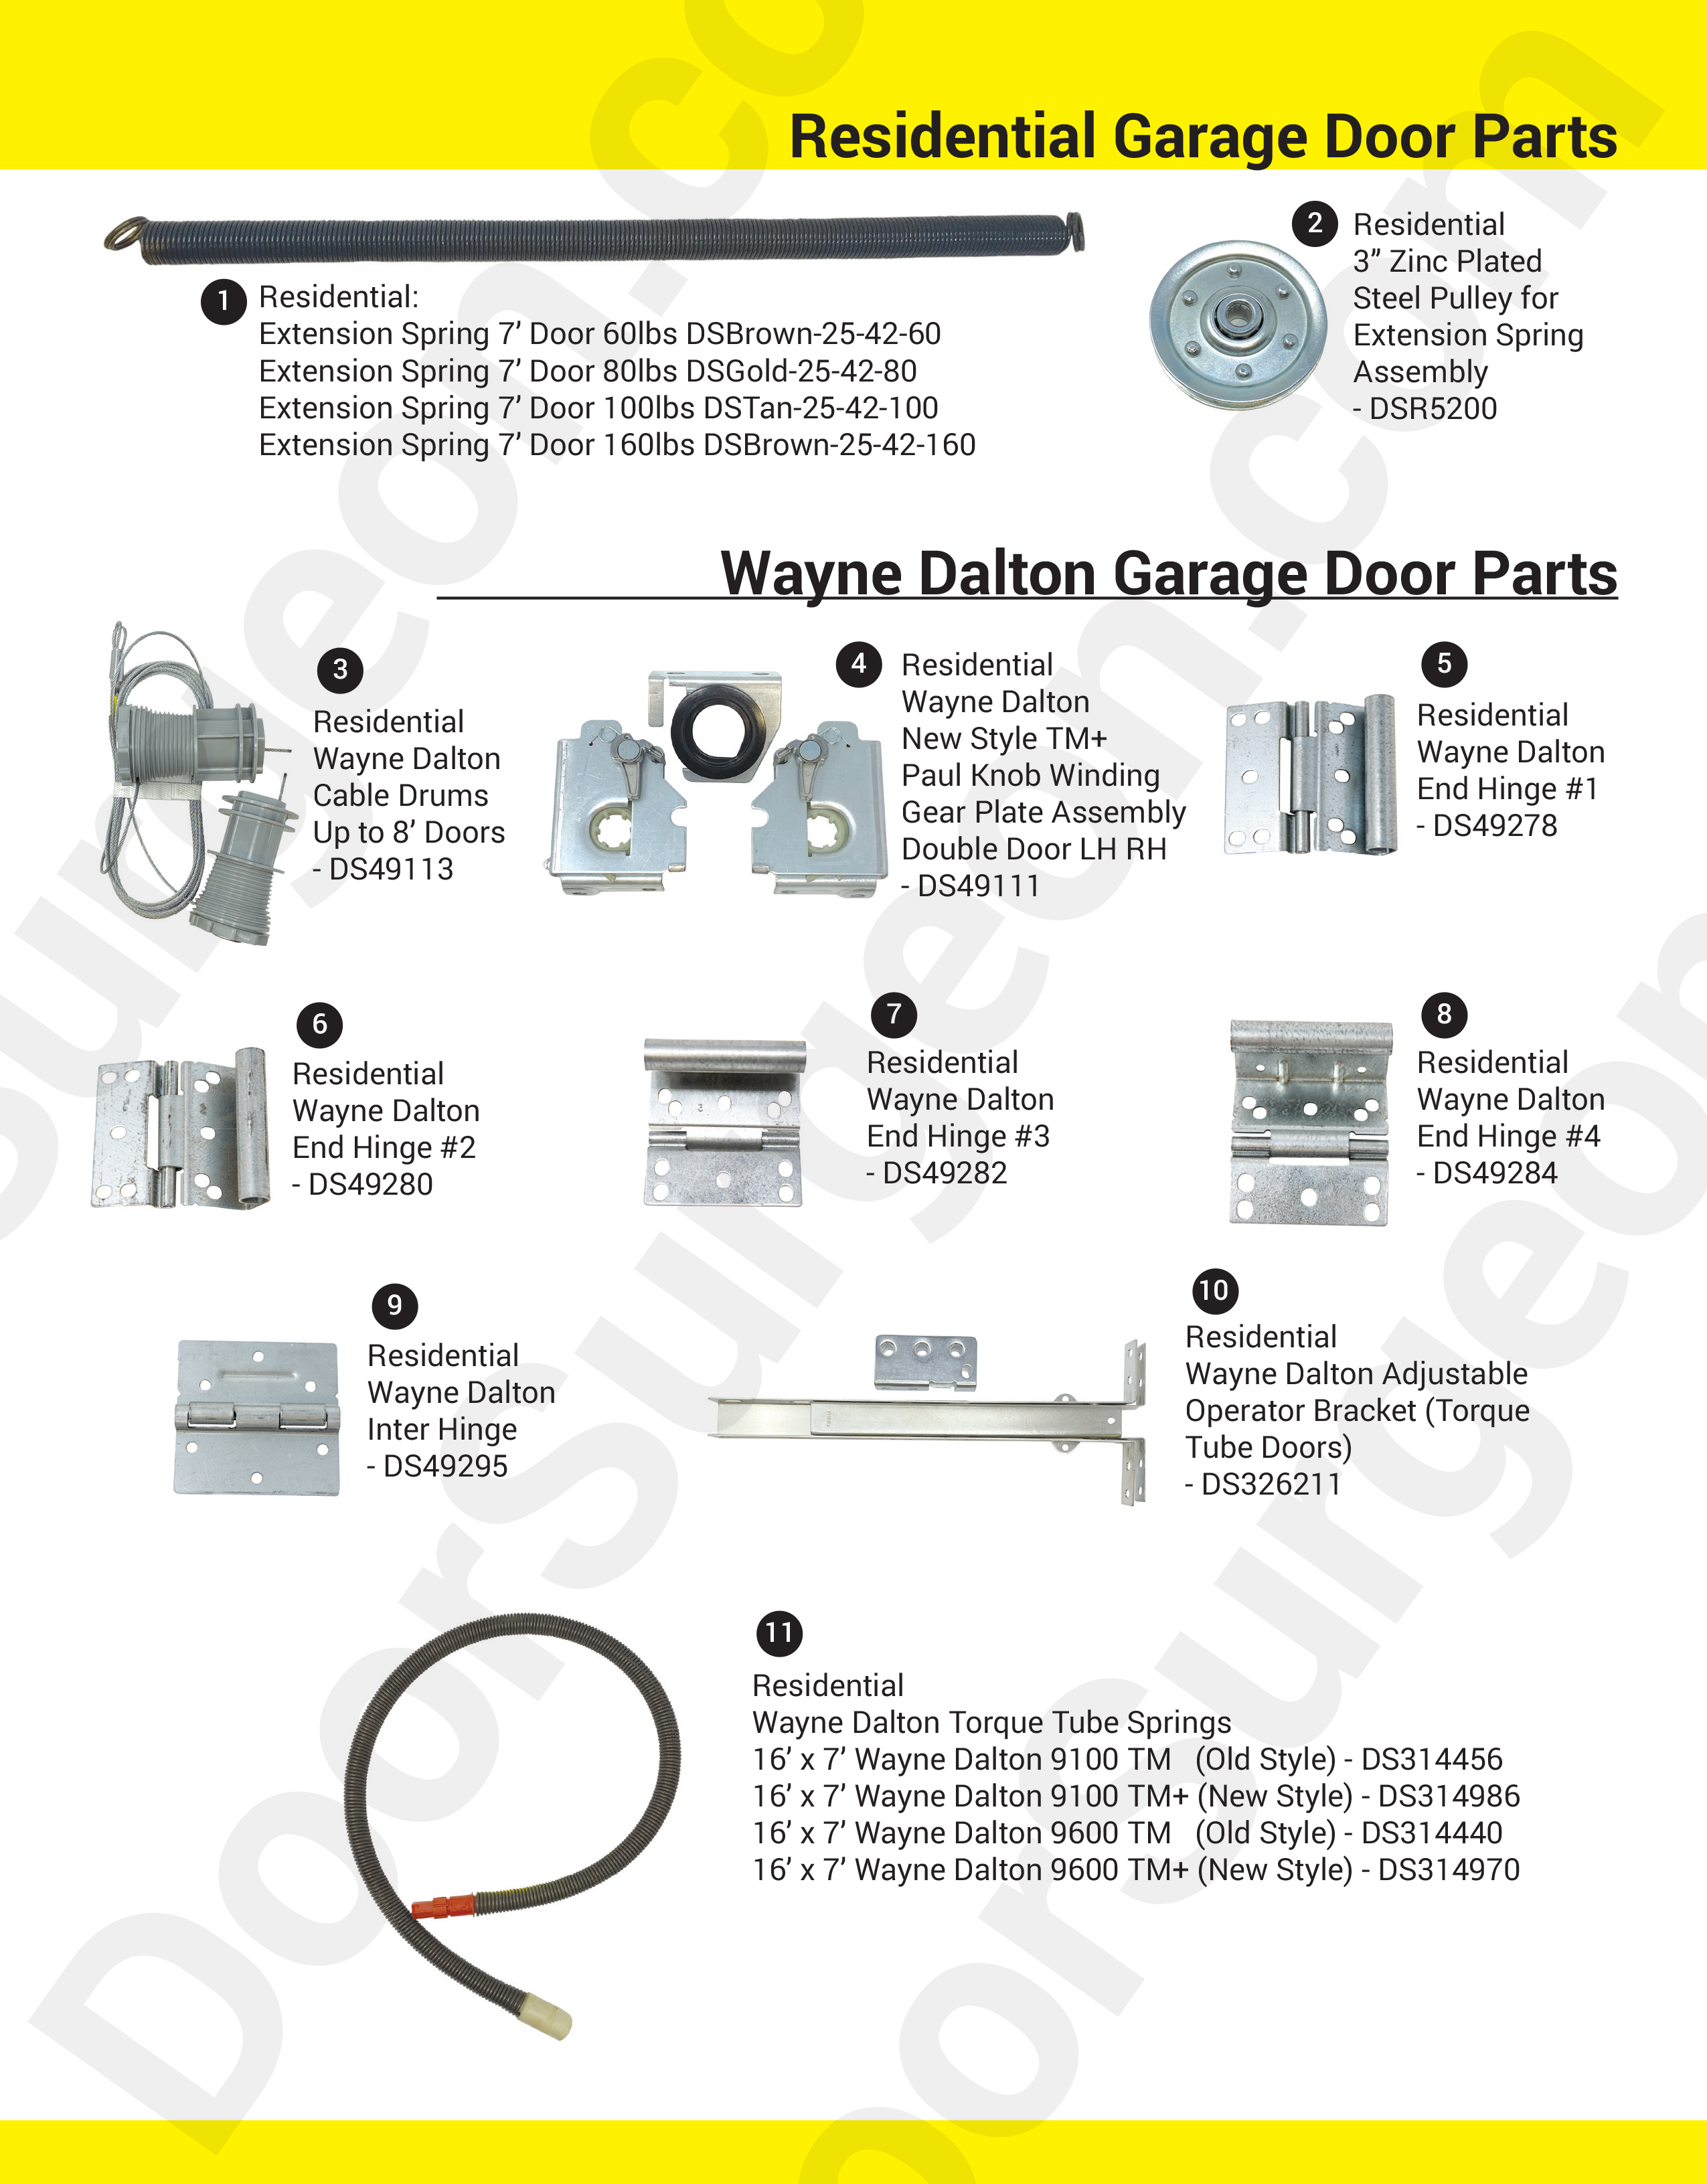 Door Surgeon replacement residential garage door parts and installation services.